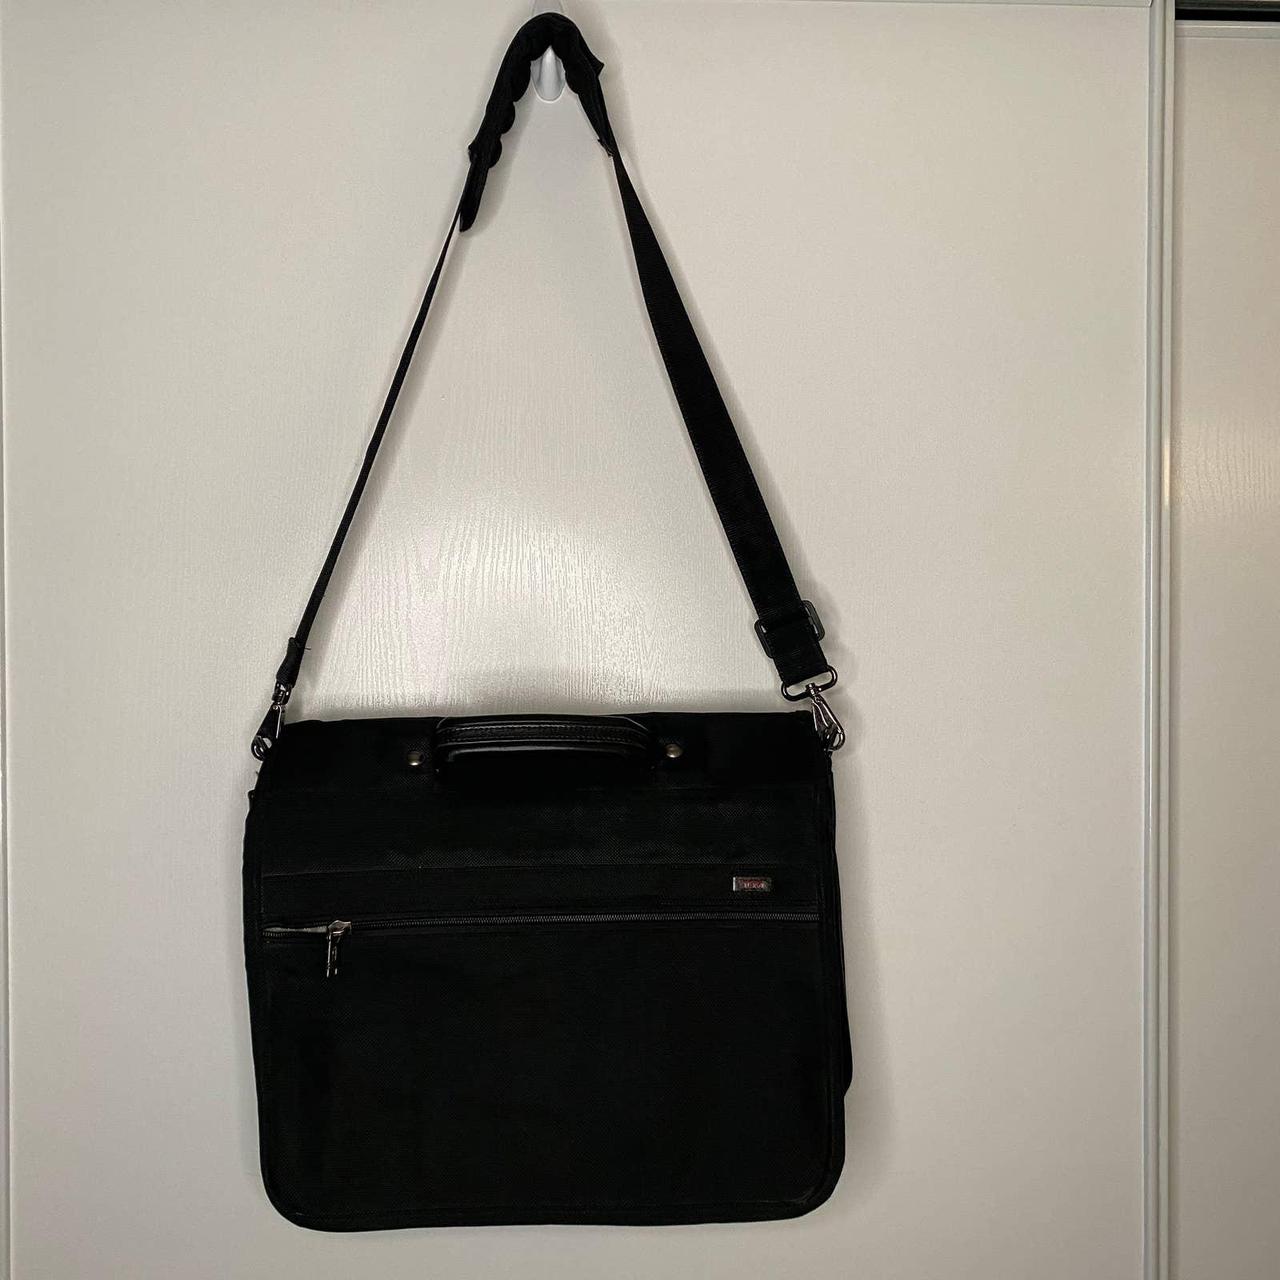 Product Image 2 - Tumi black laptop case travel